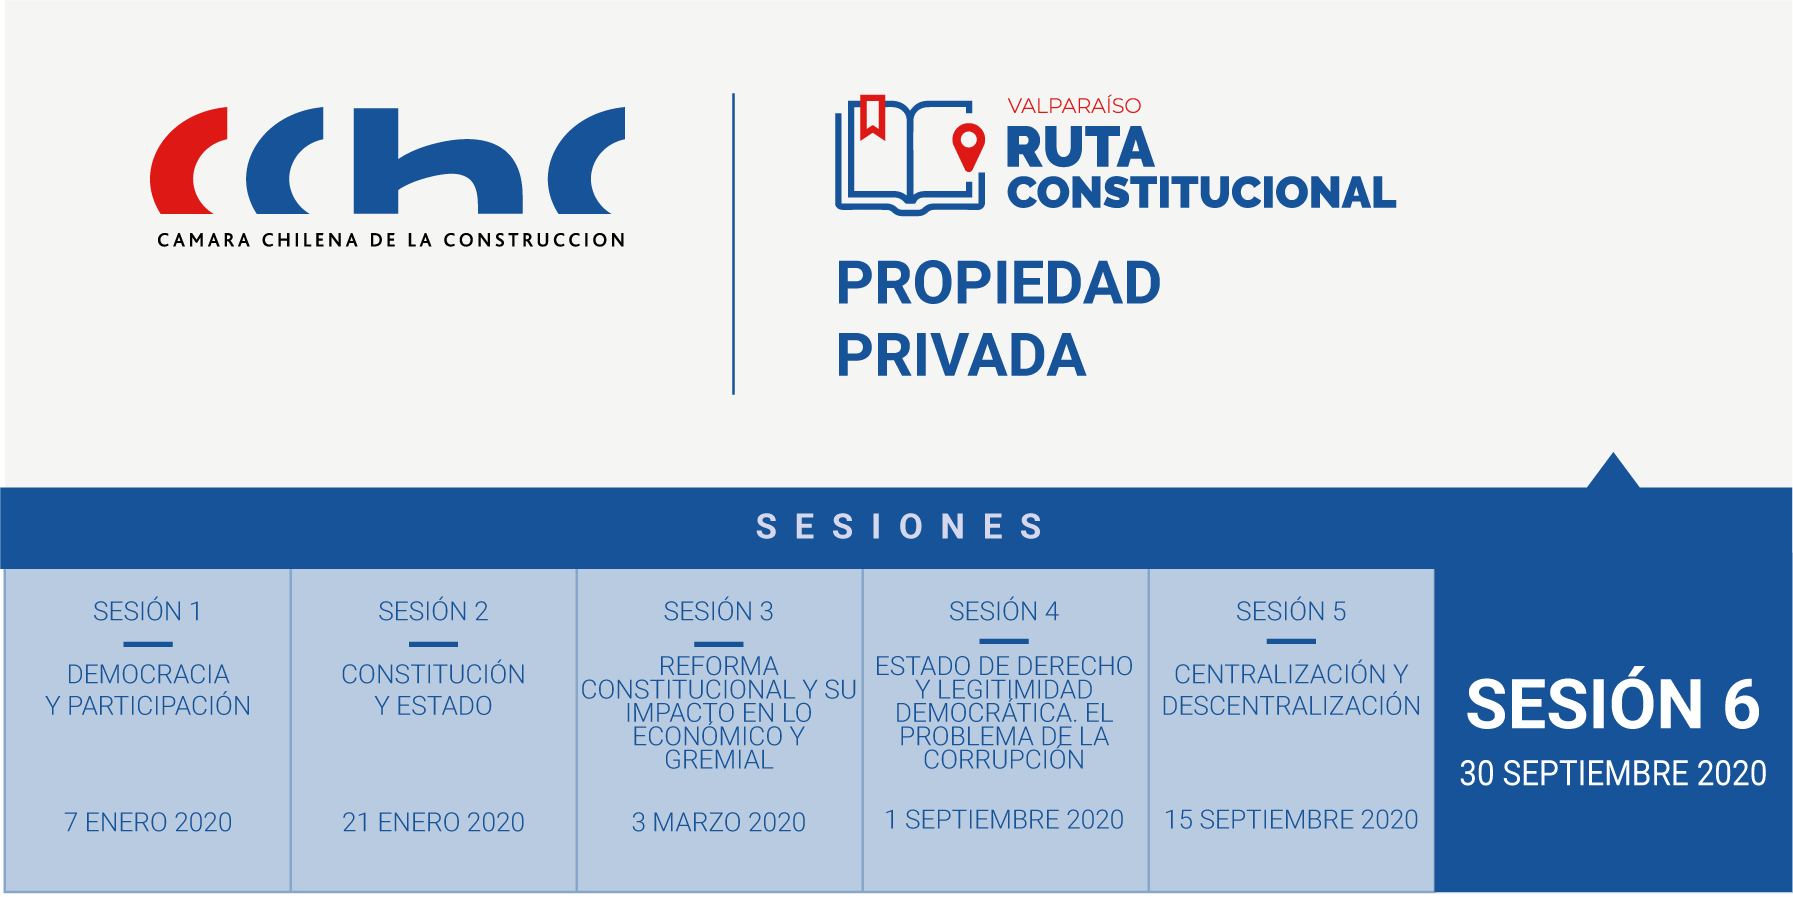 CChC_ruta_constitucional_-_socios-10.png